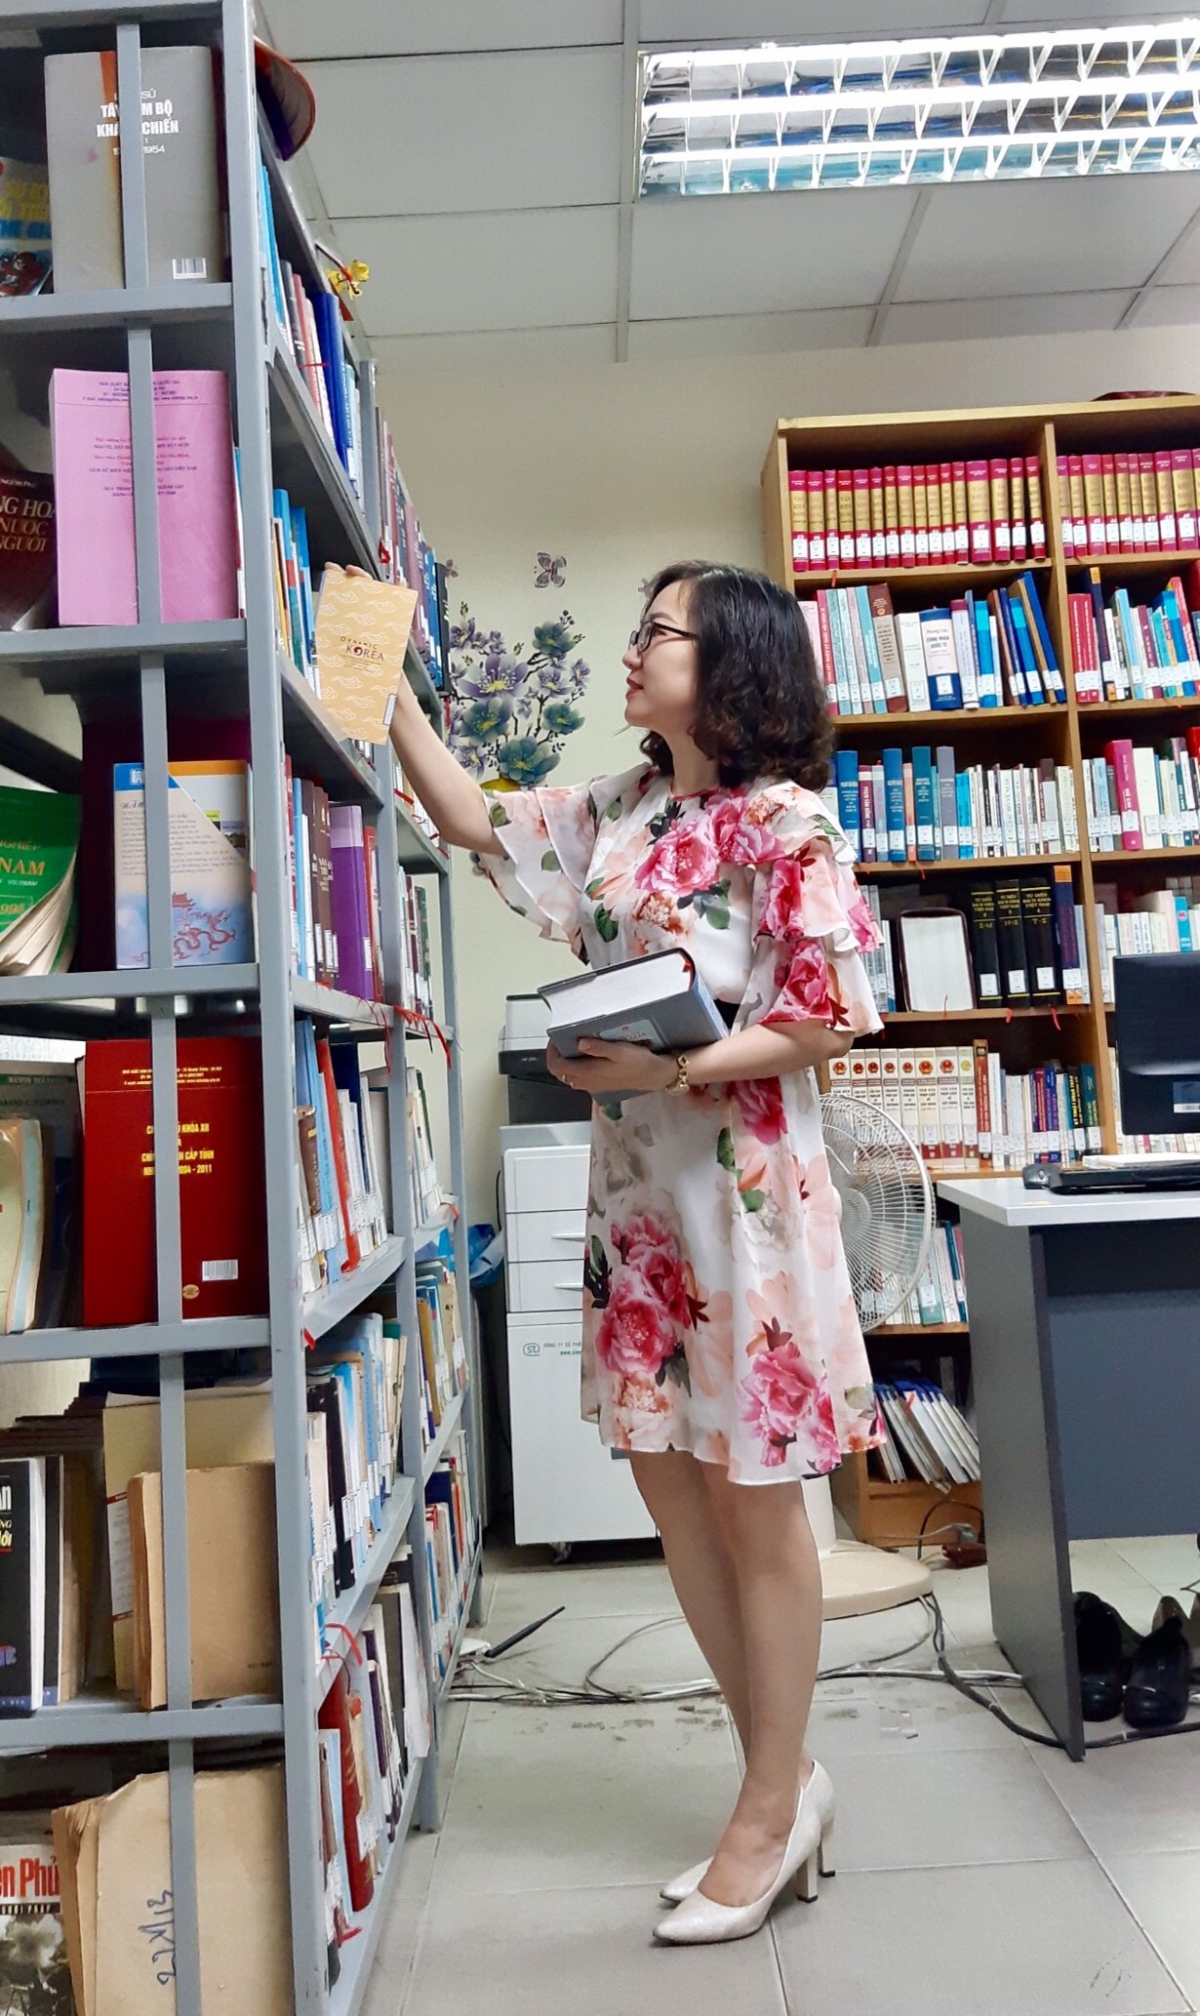 Chị Nguyễn Hương Ly, cán bộ công tác tại Thư viện Đài TNVN: "Khơi gợi và lan tỏa tình yêu sách, tinh thần ham đọc sách - đó chính là cái đích hướng đến của Đài TNVN nói chung, Thư viện Đài TNVN nói riêng"